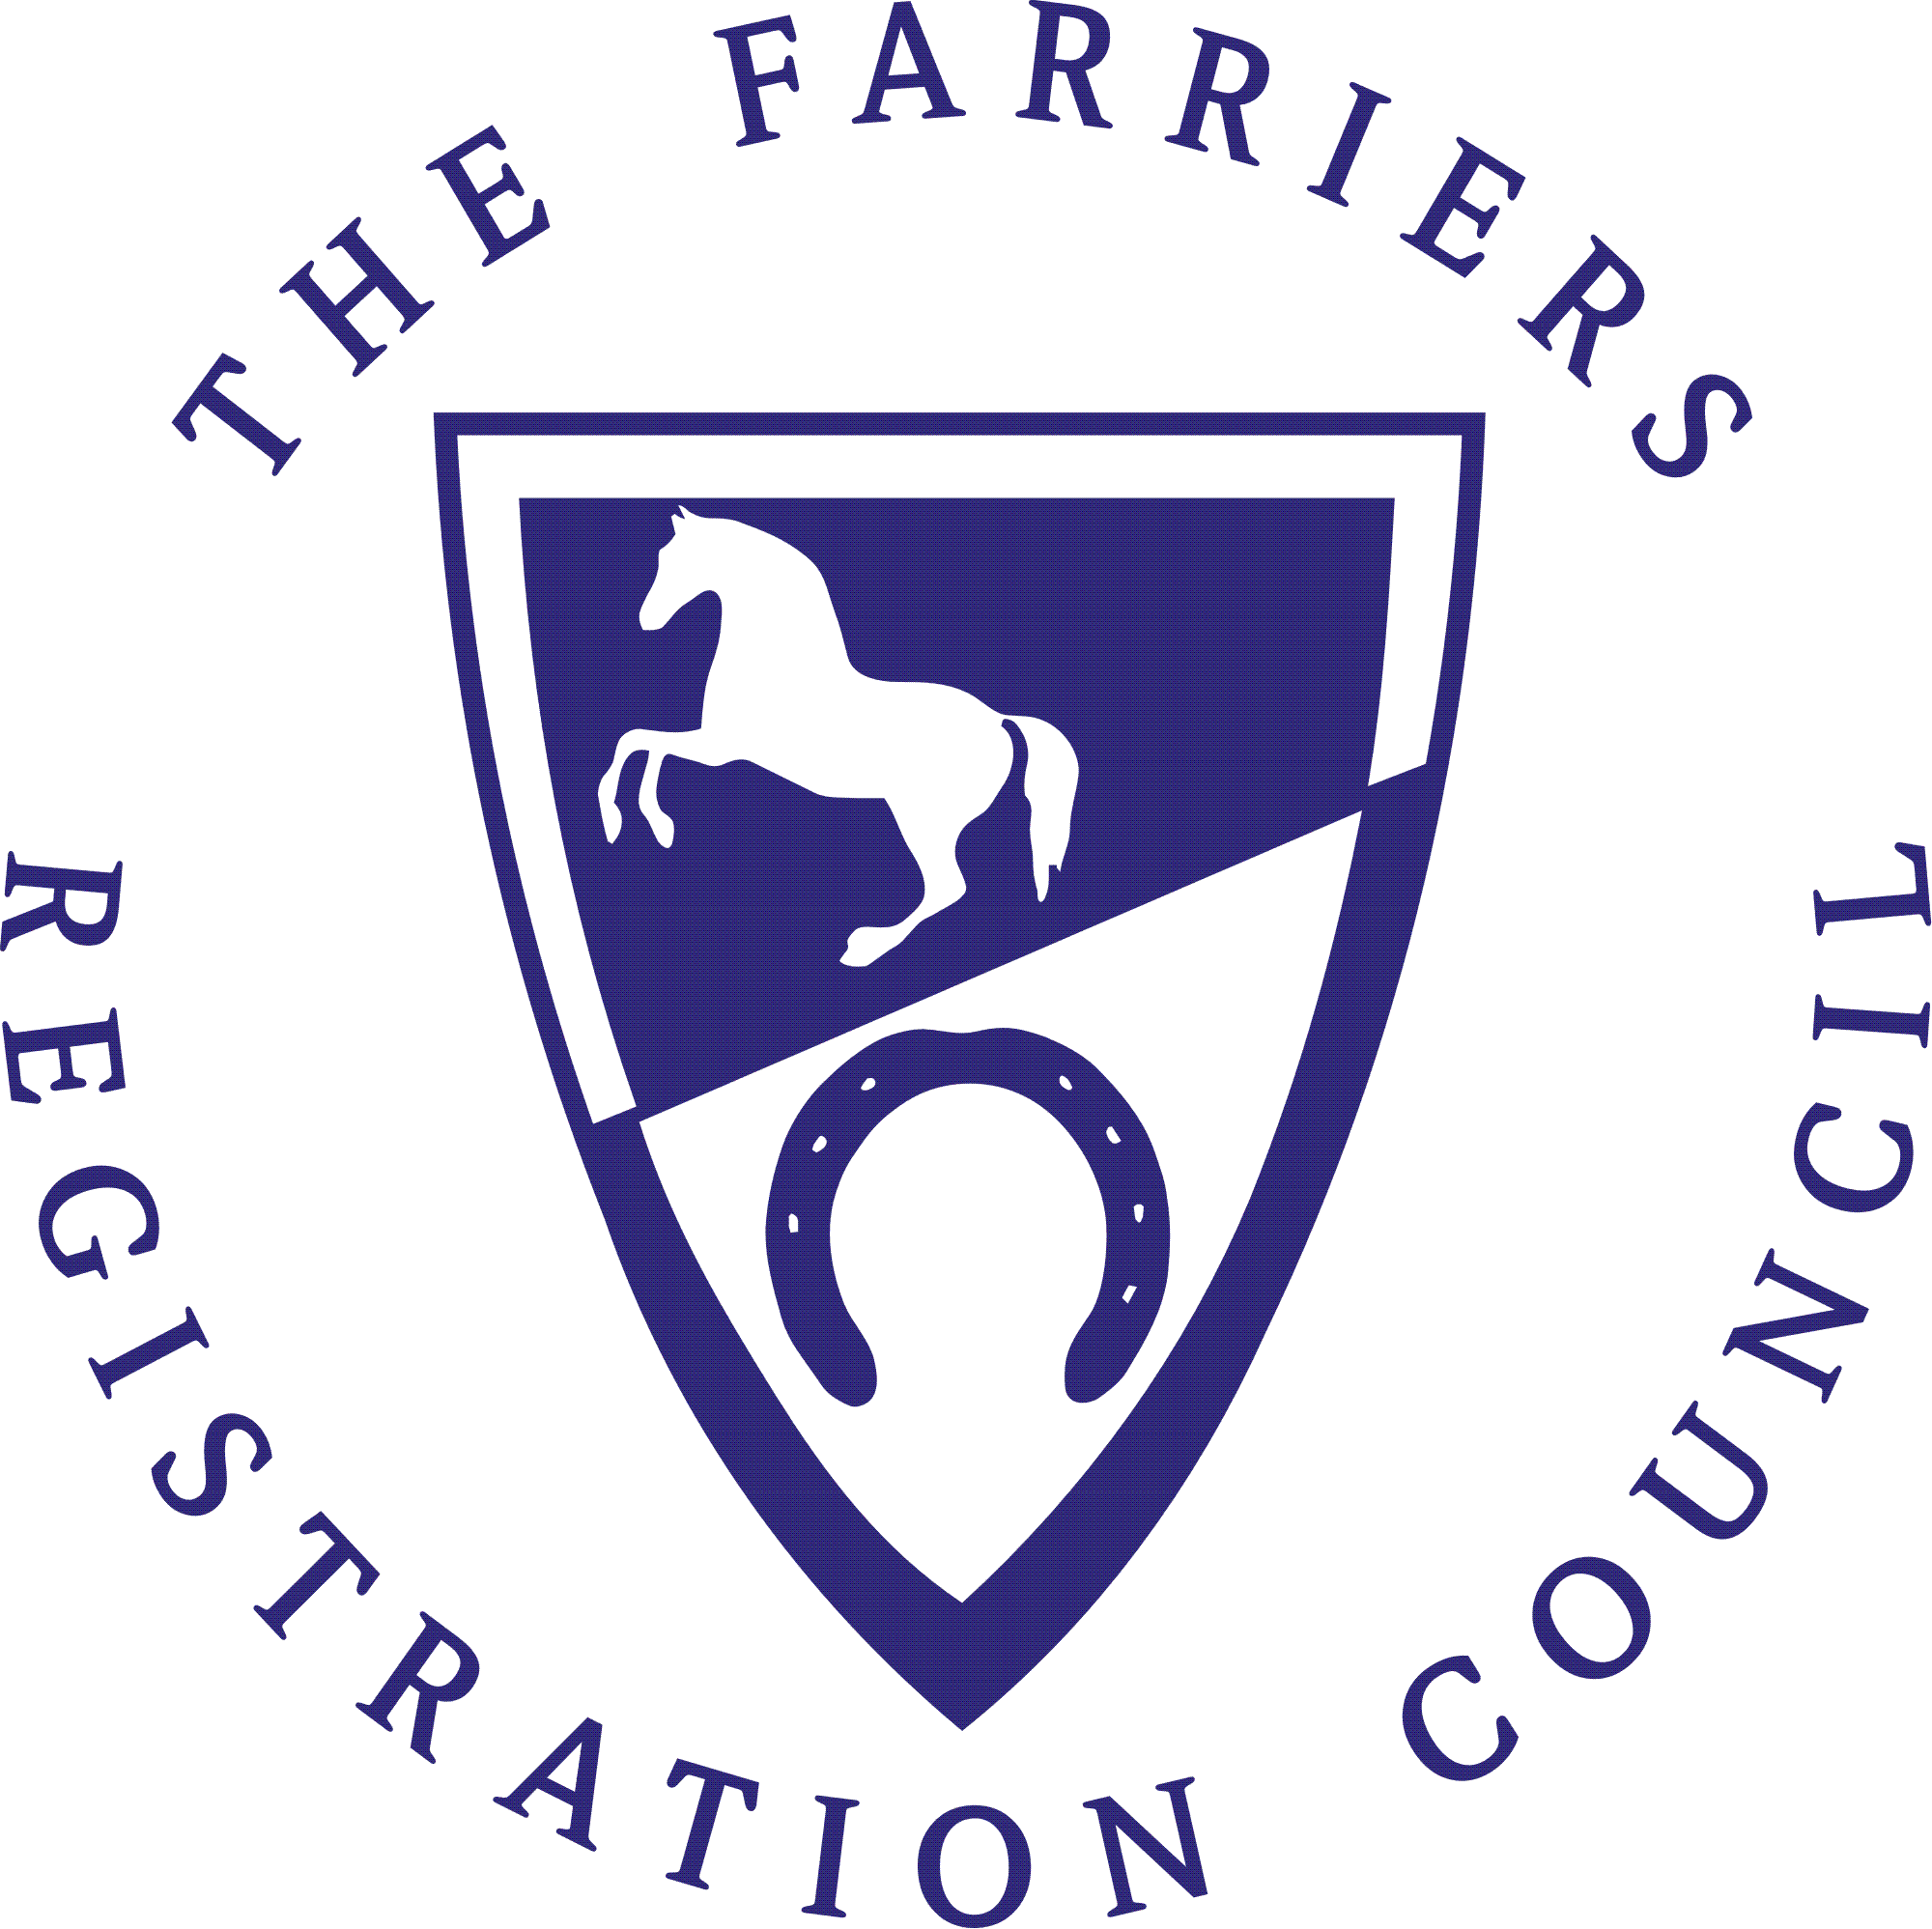 FRC logo